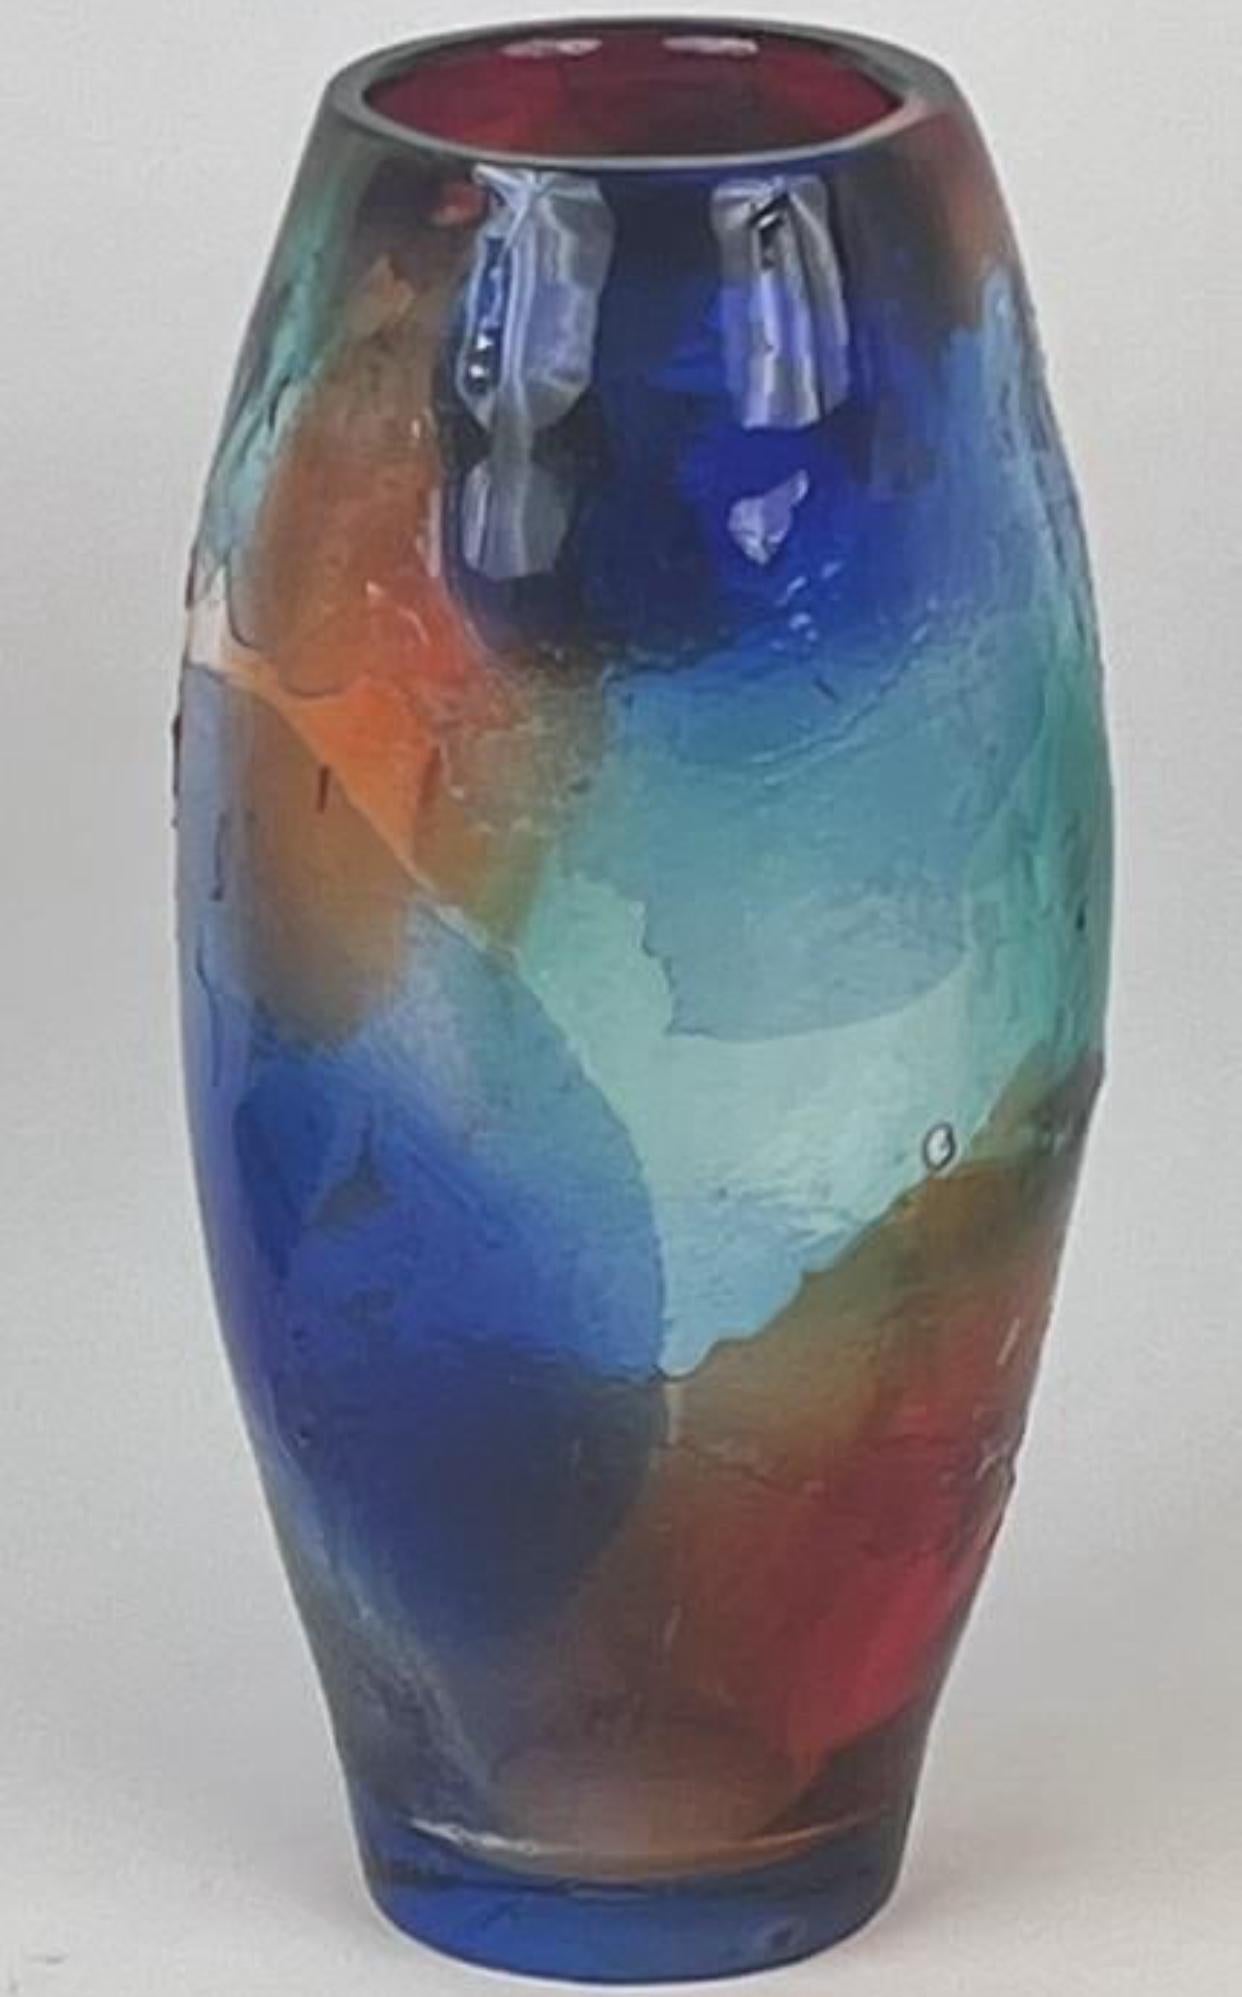 Grand vase coloré en verre de Murano soufflé à la main par le maestro Giuliano Tosi. Des couleurs vives (bleu, orange, vert et rouge) qui se mélangent et se superposent. Les formes et les textures en relief ajoutent également à la forme unique de ce